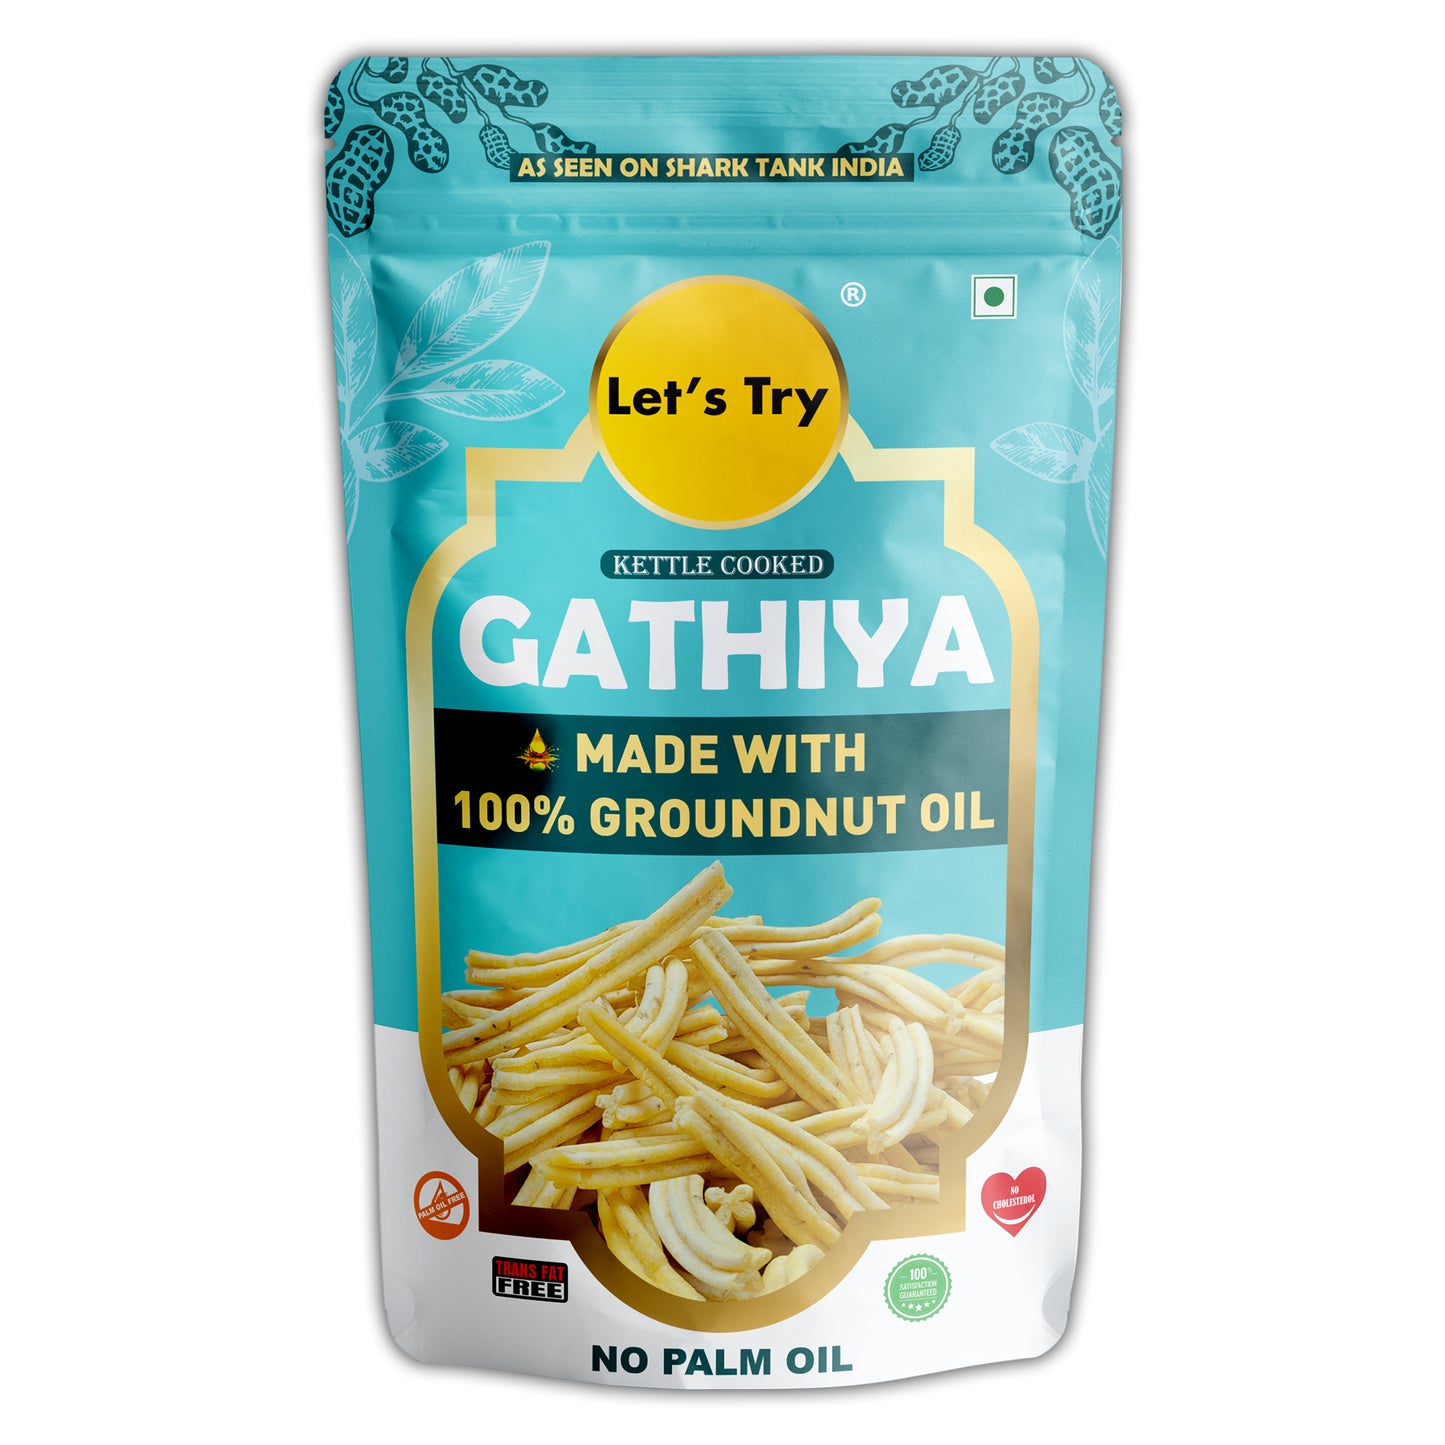 Gathiya 180g